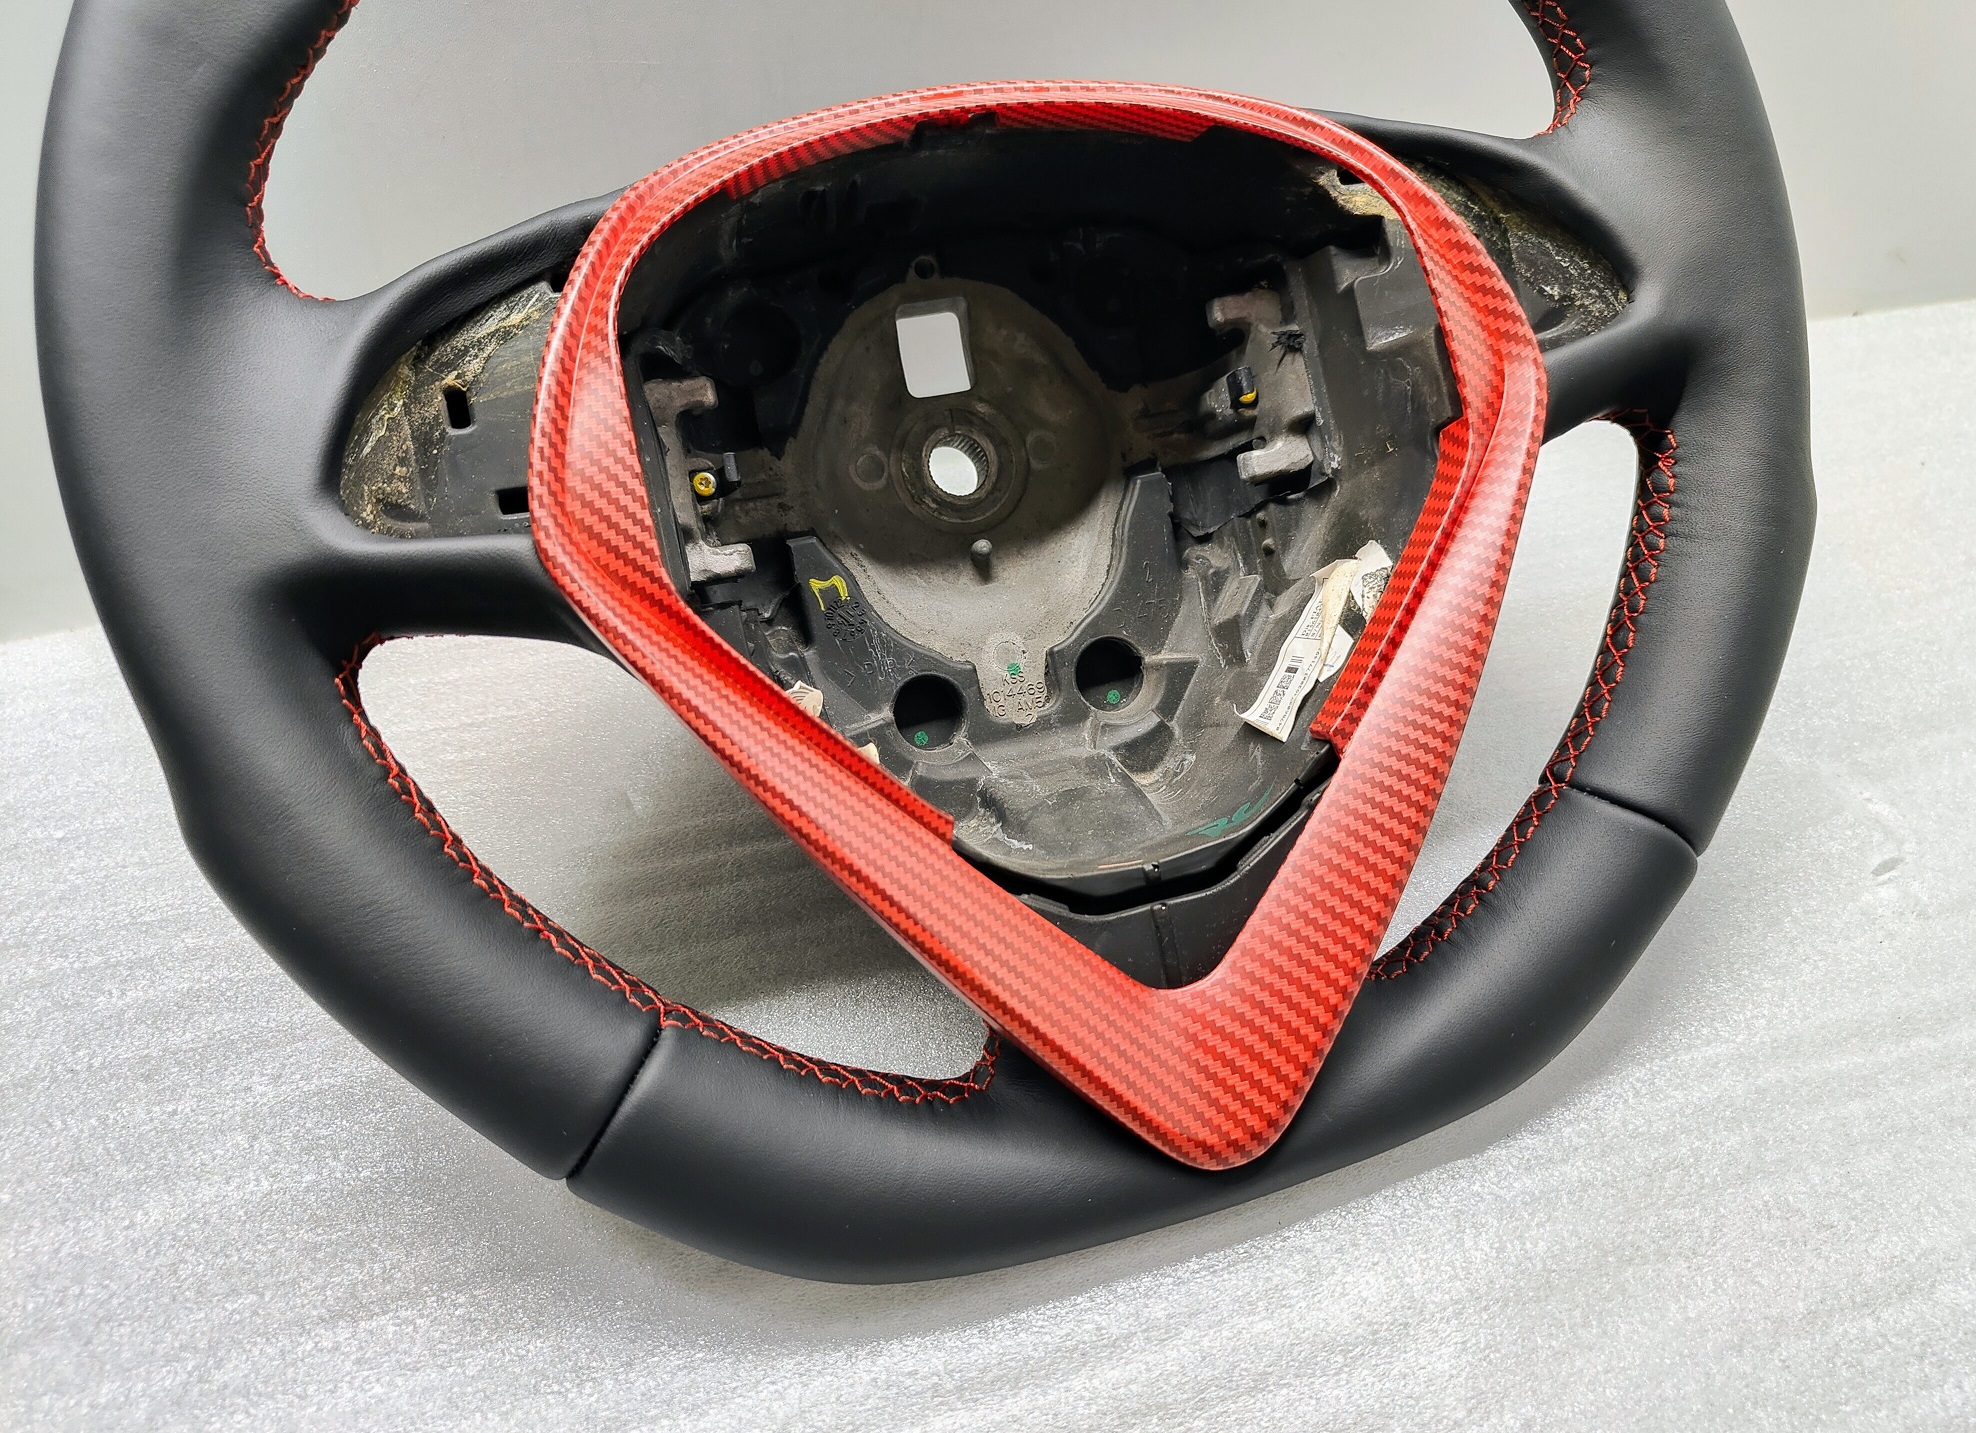 Alfa Giulietta flat steering wheel Custom Sport Red Stitch